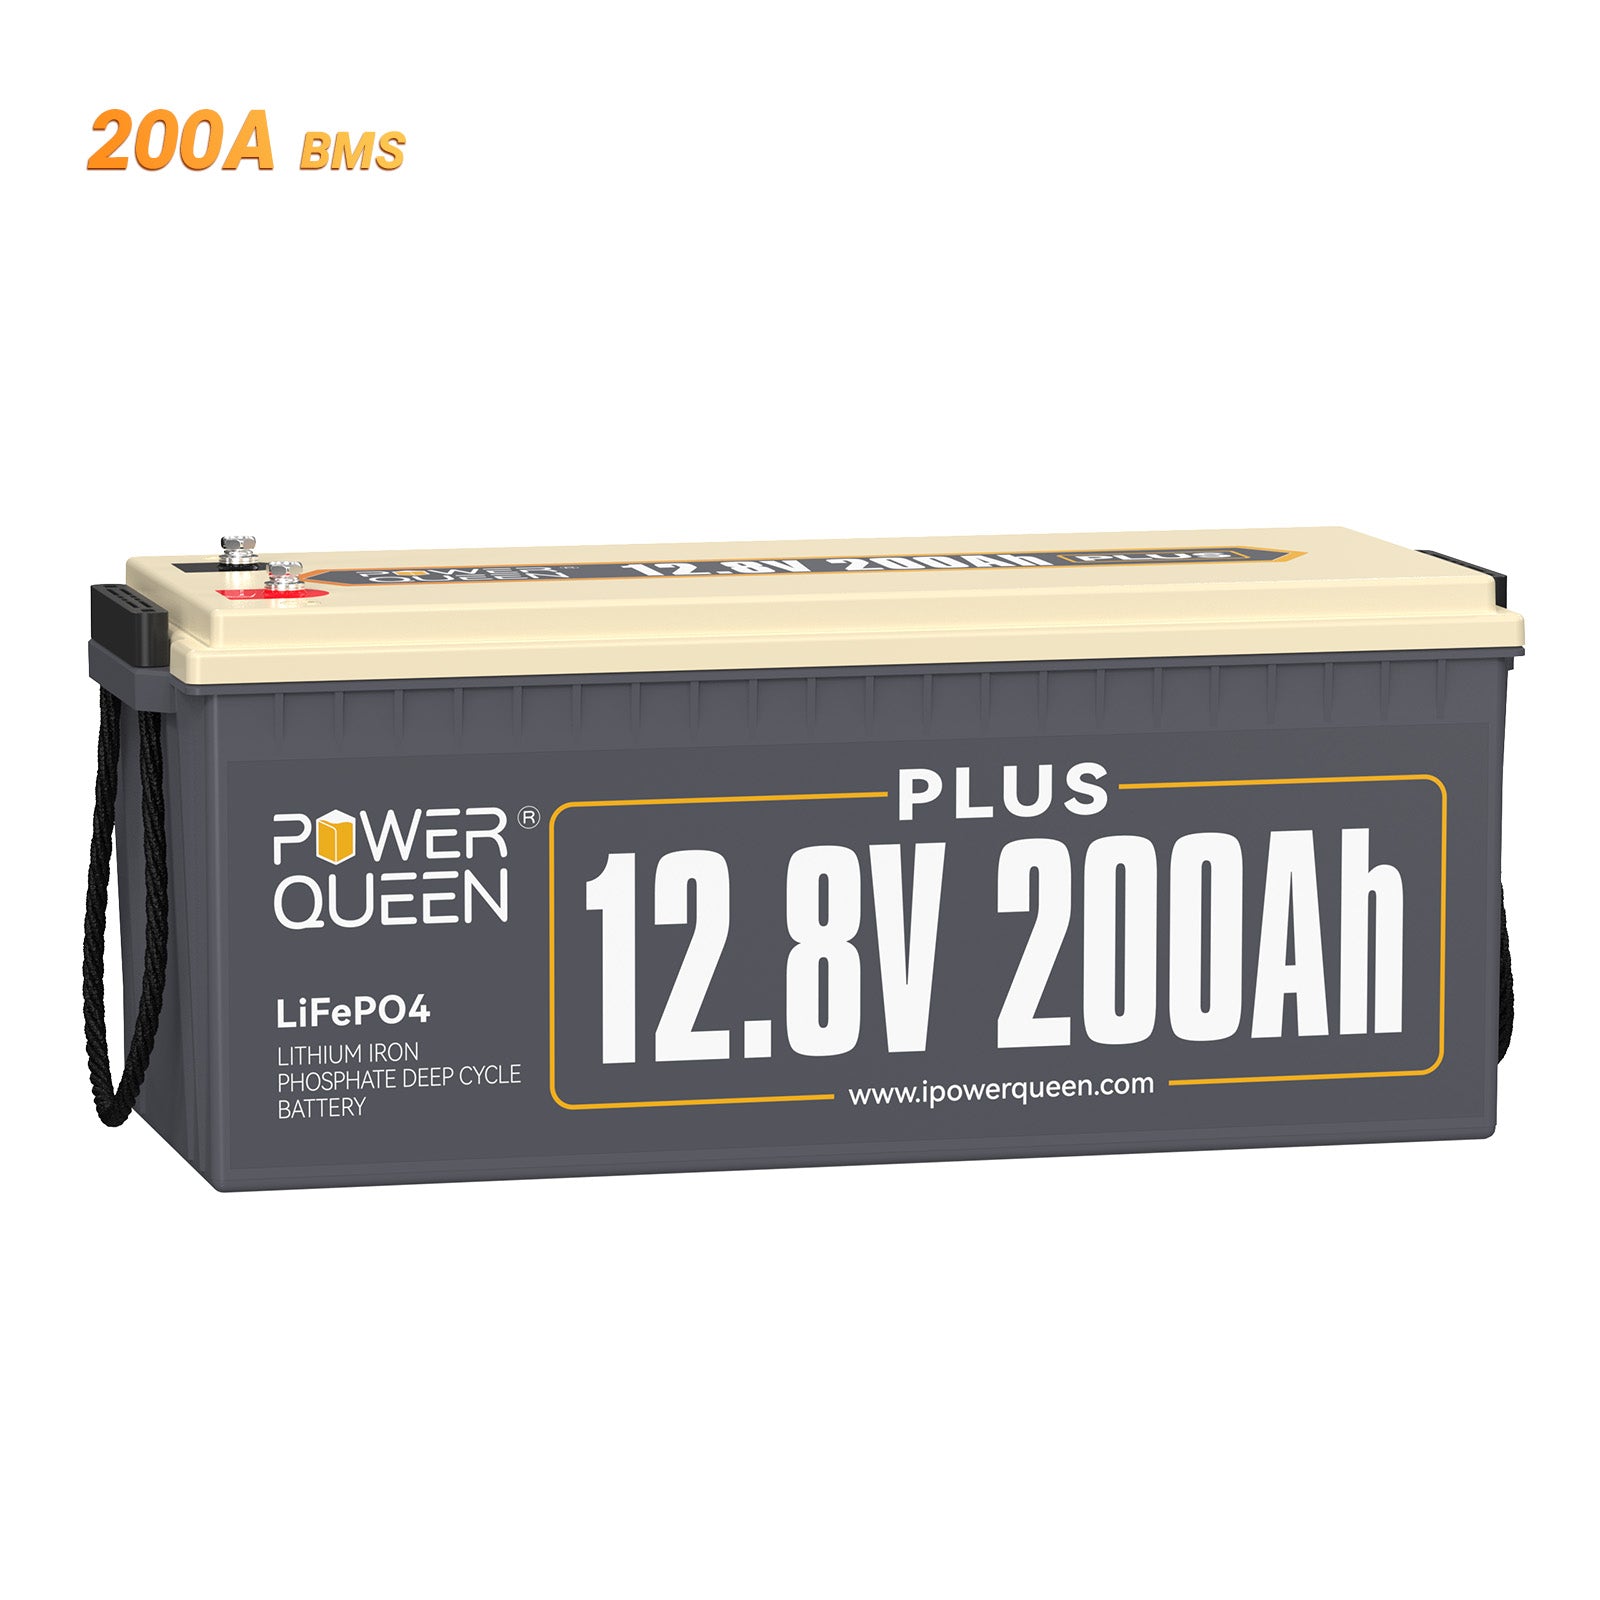 Batterie Power Queen 12,8 V 200 Ah Plus LiFePO4, BMS 200 A intégré